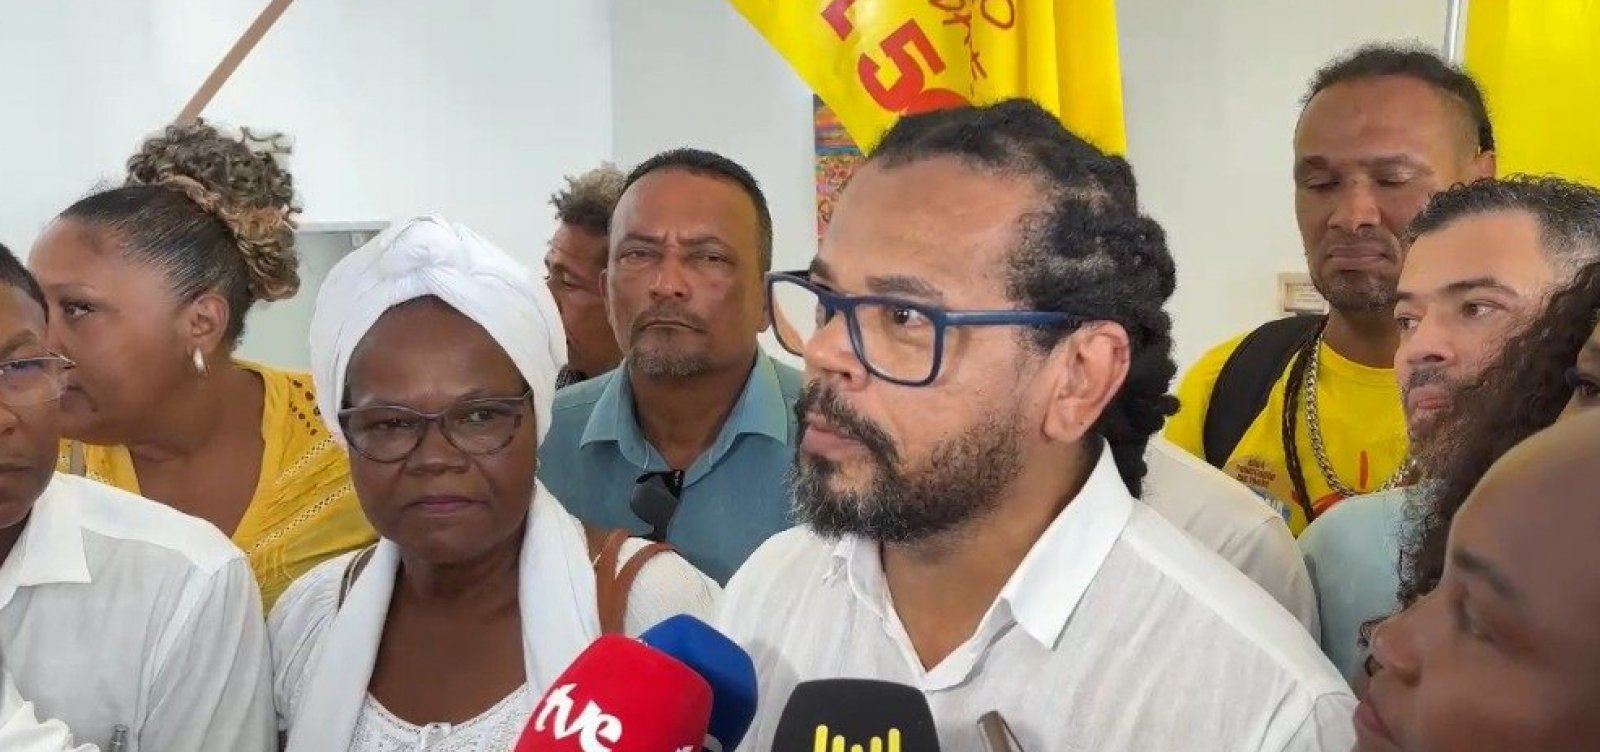 Kleber Rosa oficializa candidatura à prefeitura de Salvador em convenção: "Nossa prioridade é emprego e renda"